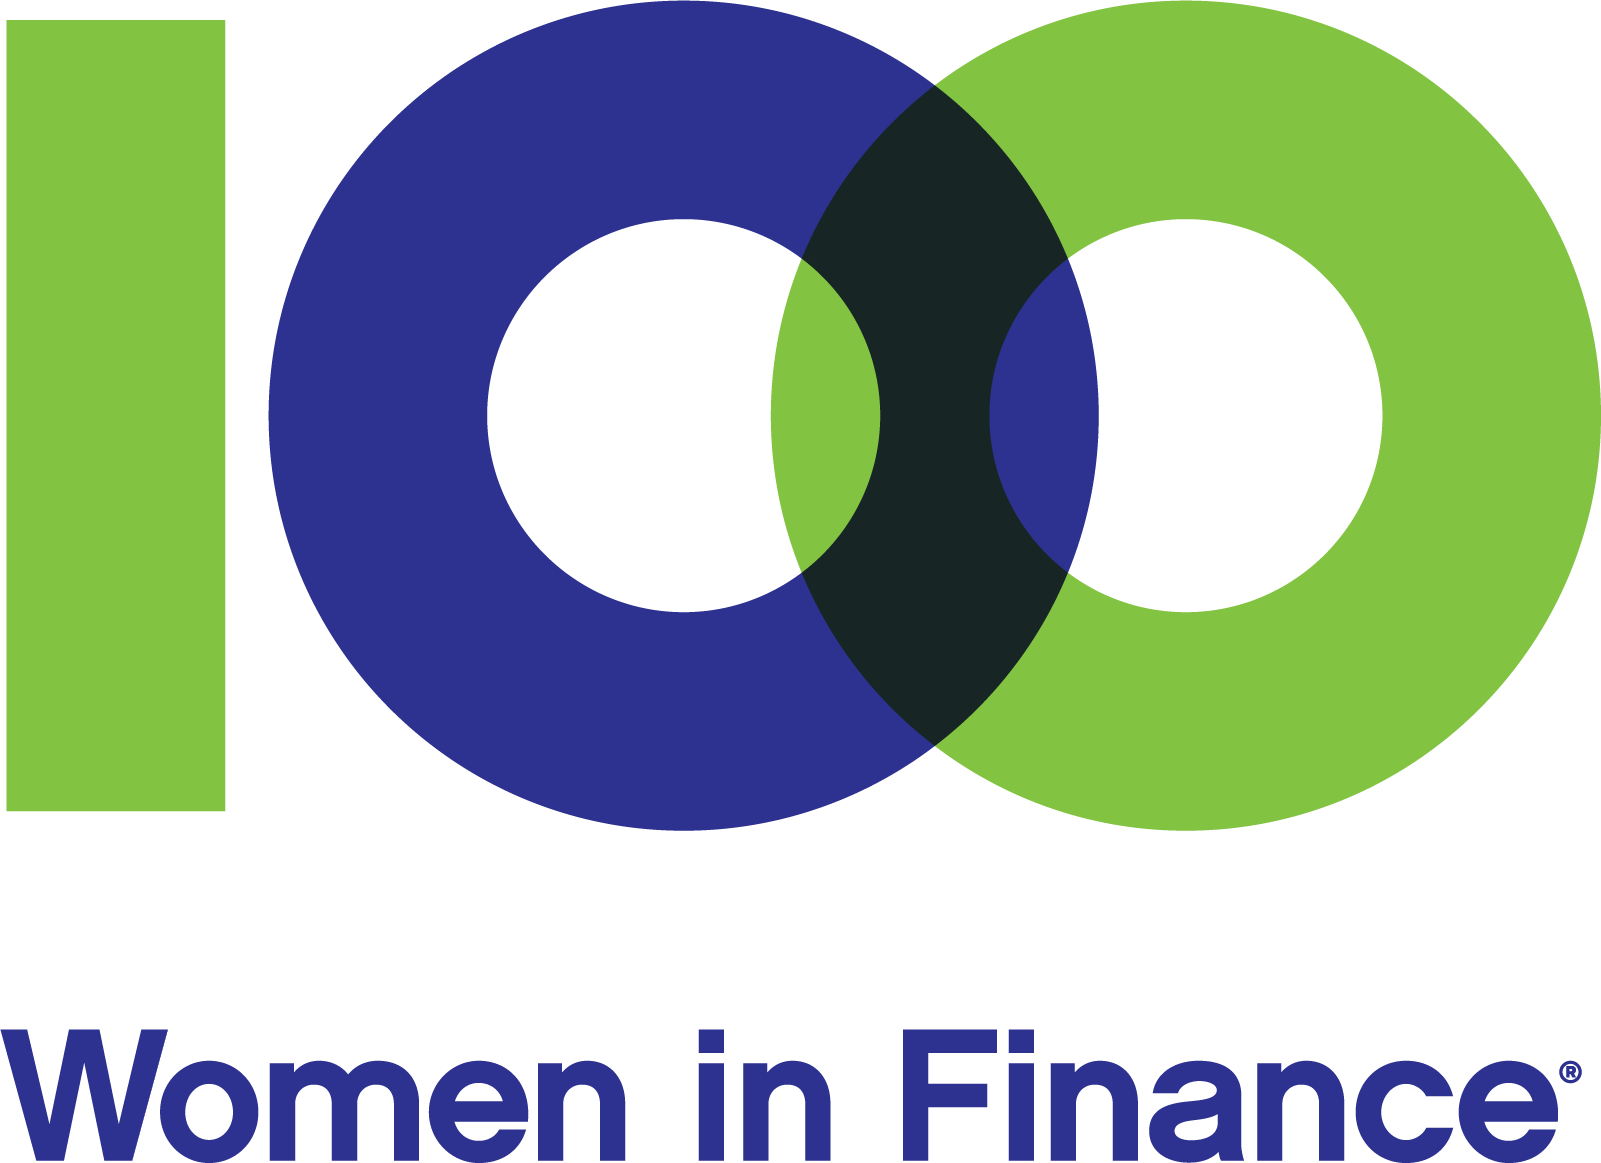 100 women in finance